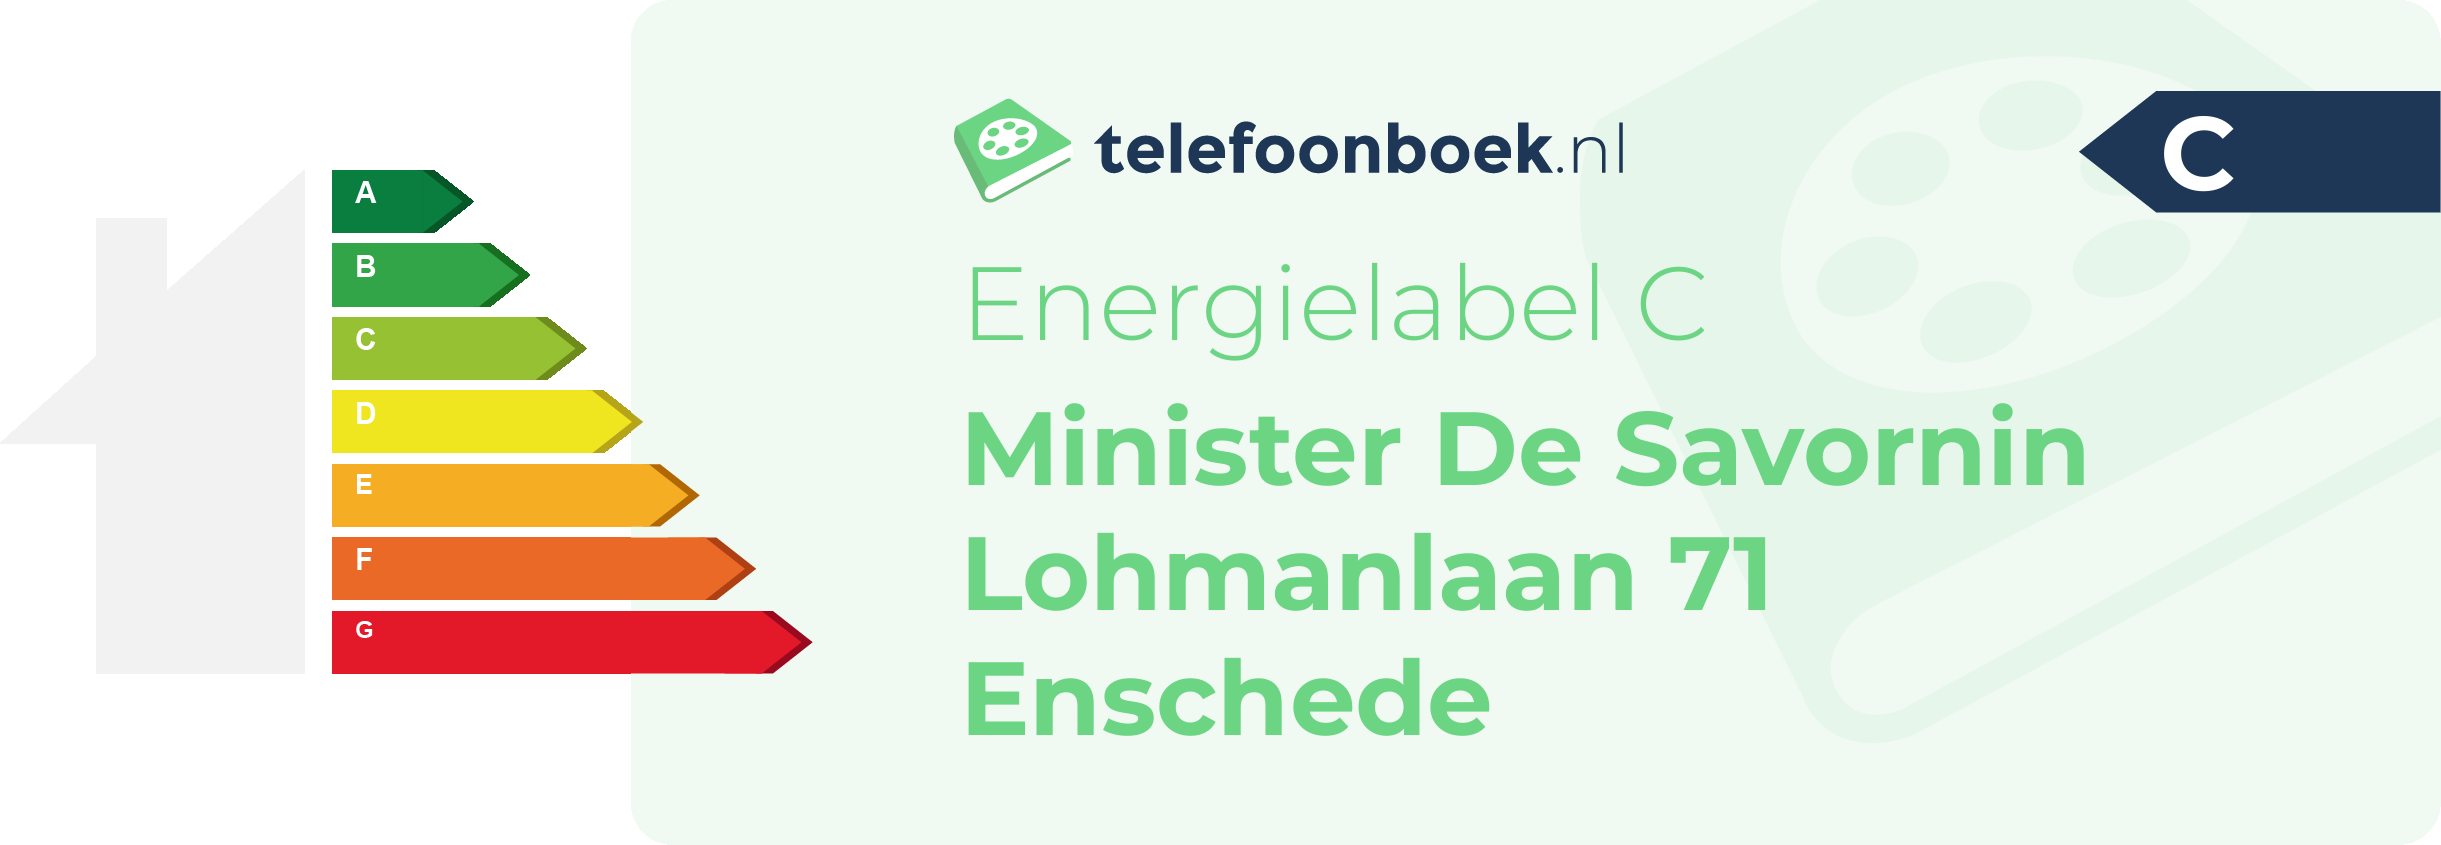 Energielabel Minister De Savornin Lohmanlaan 71 Enschede